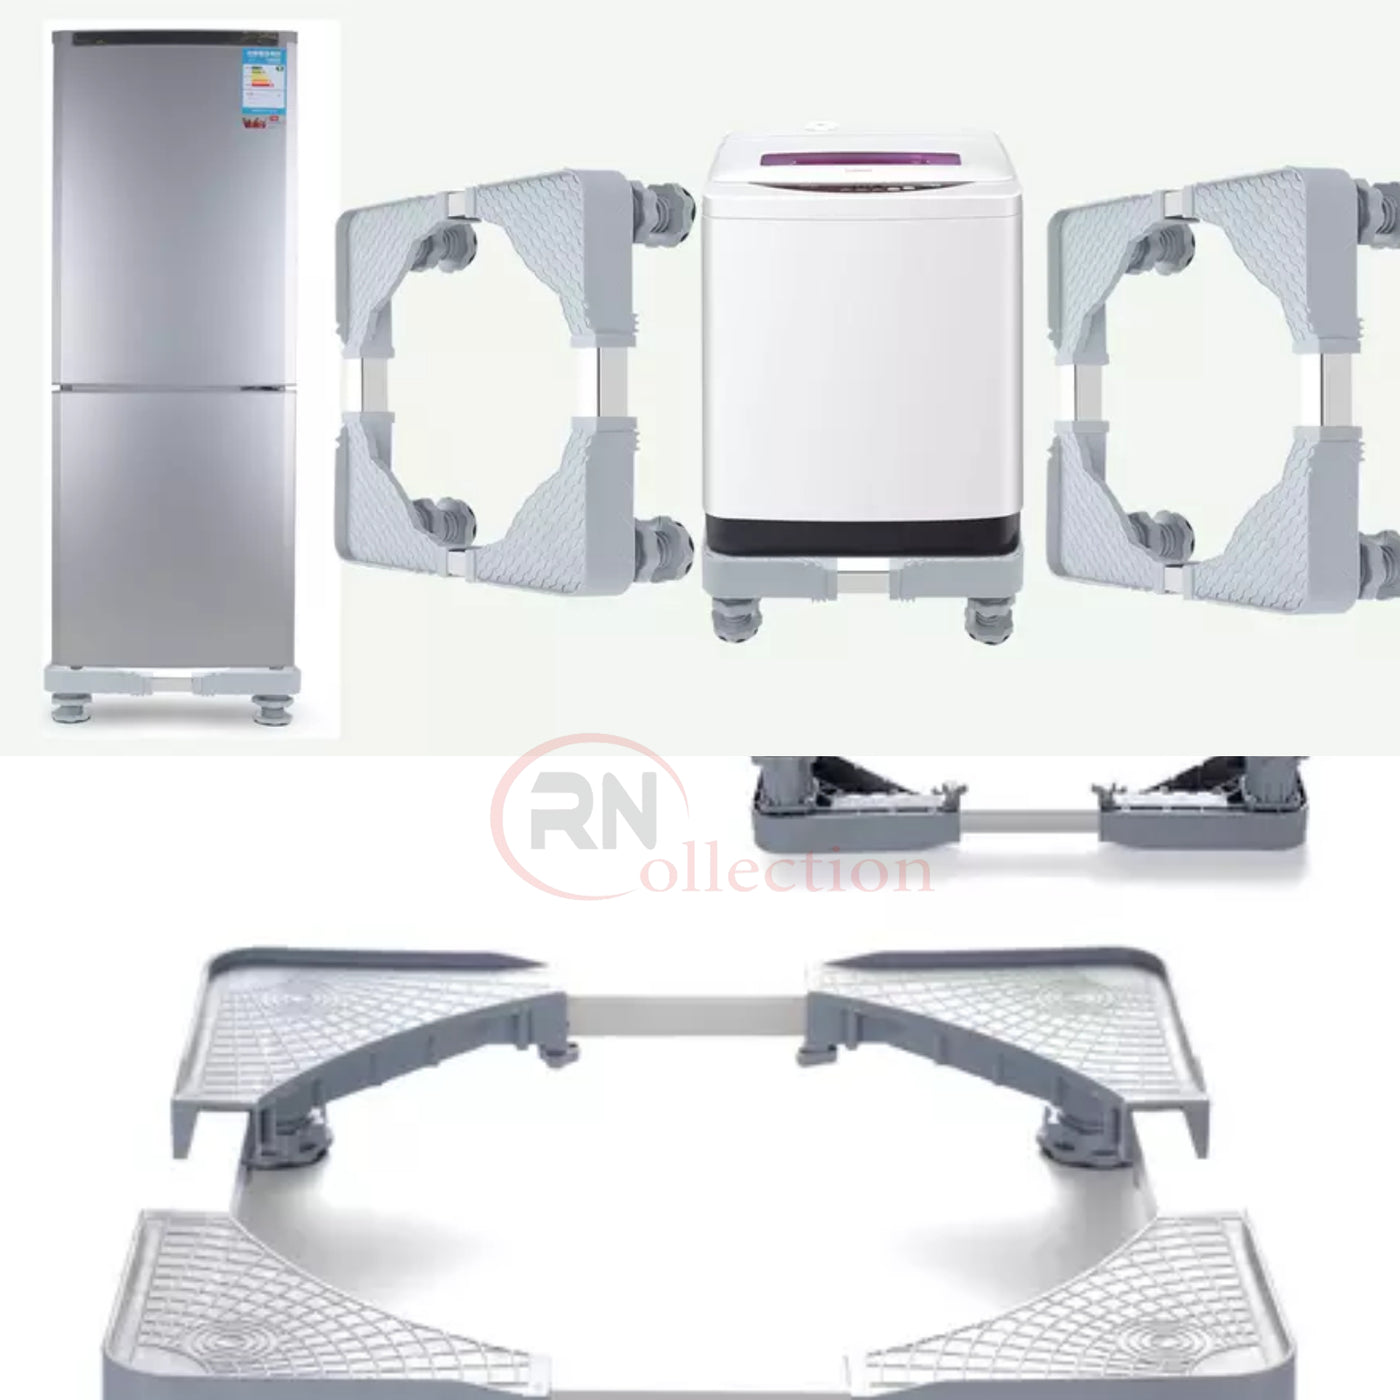 Support frigo cuisiniere ou machine à laver sans roue – COLLECTIONRN